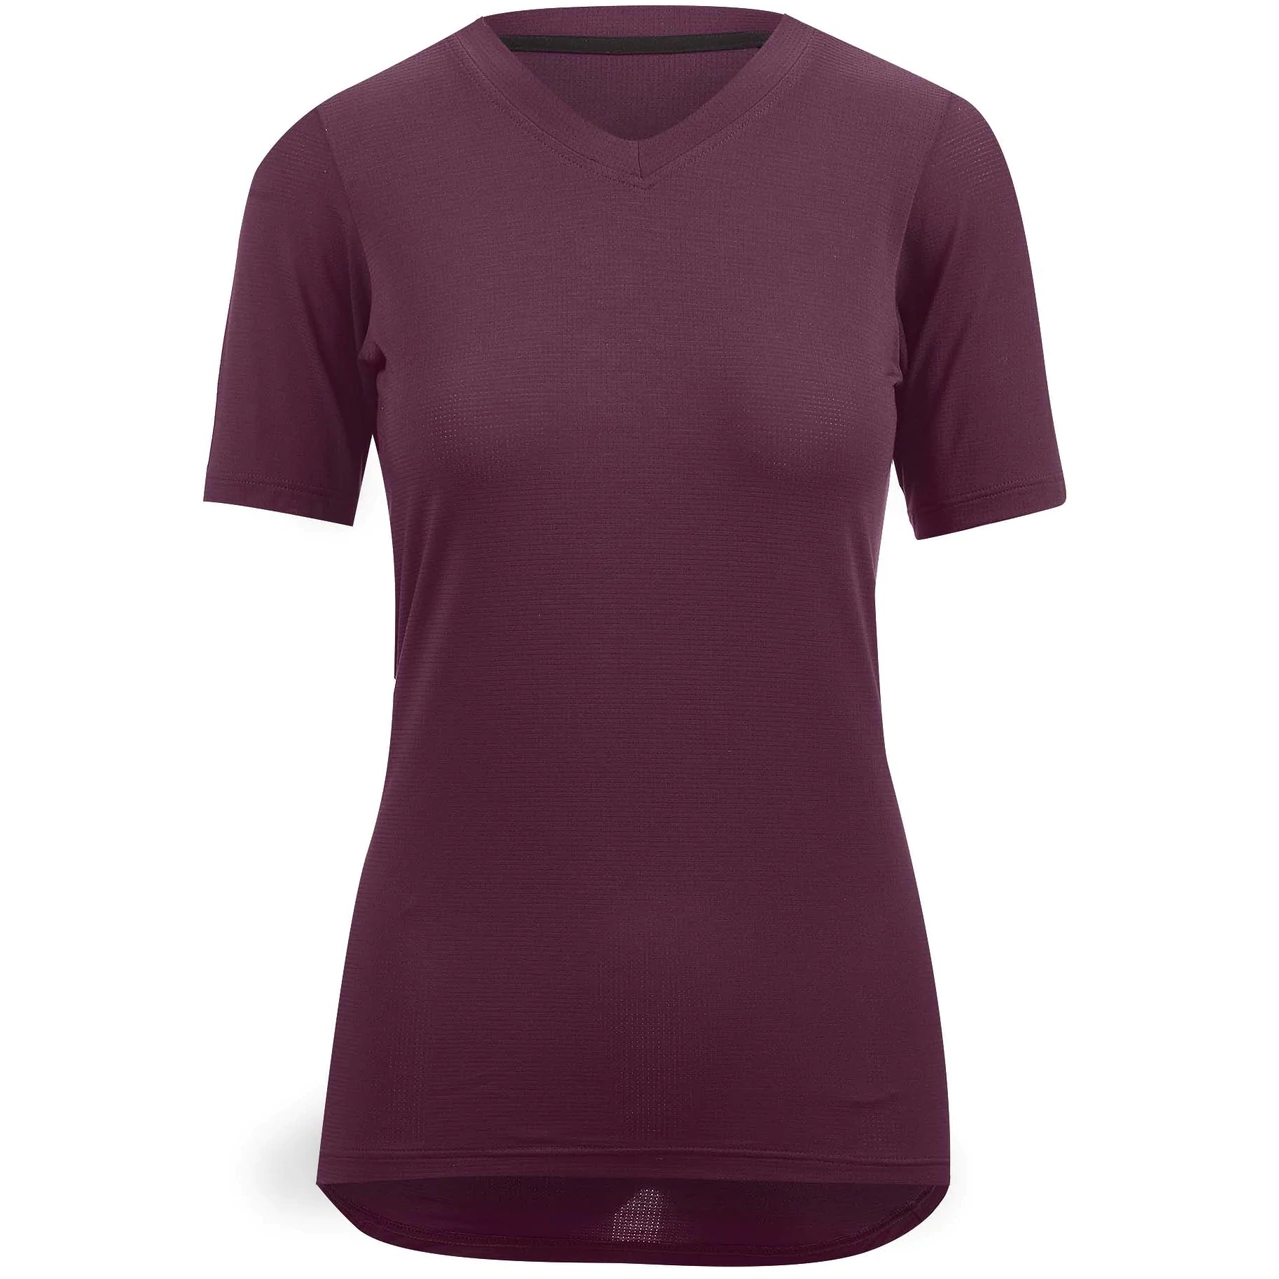 Produktbild von Velocio Micromodal Trail Damen T-Shirt - Black Cherry